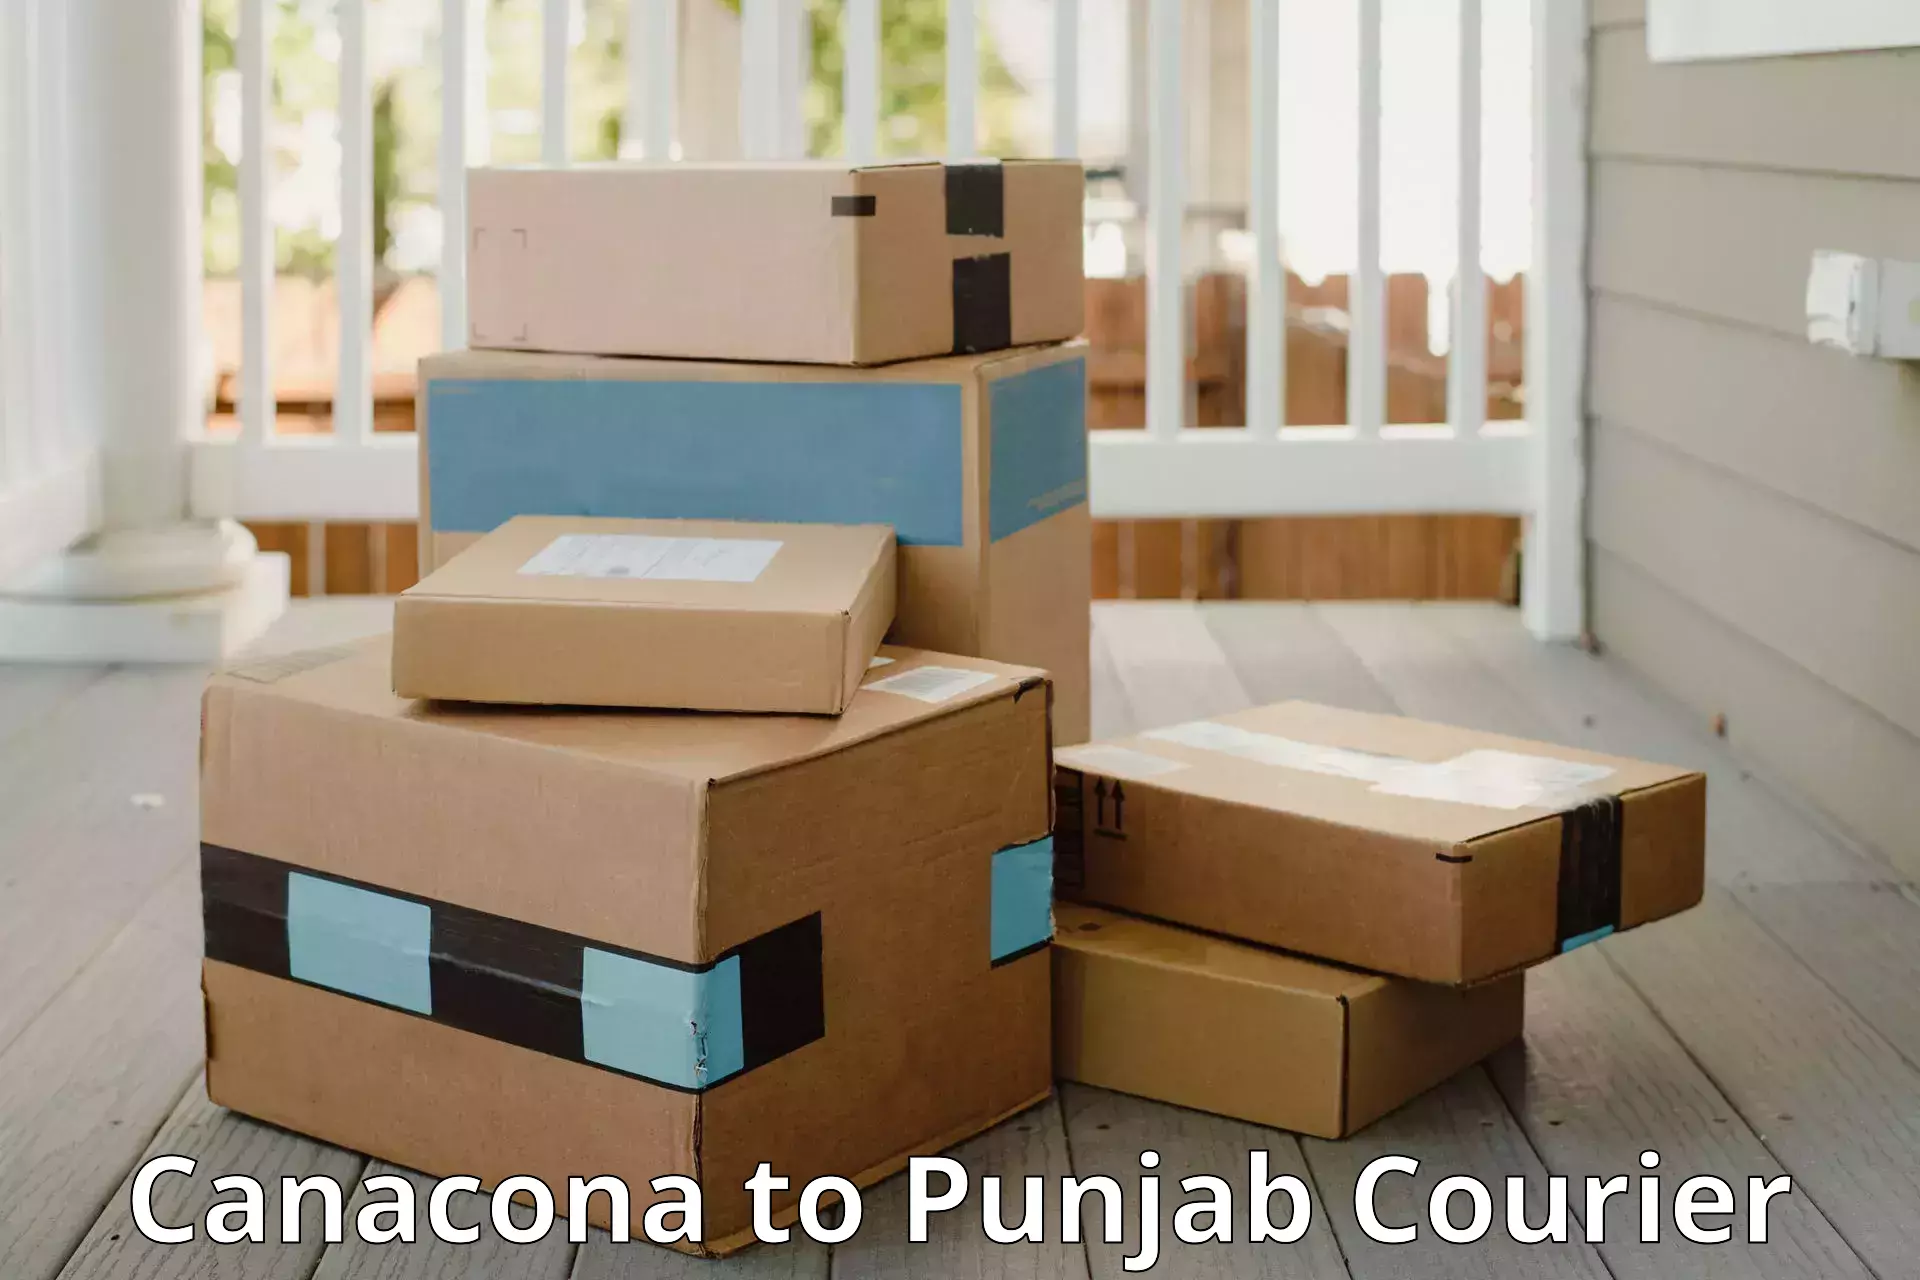 Global baggage shipping Canacona to Central University of Punjab Bathinda